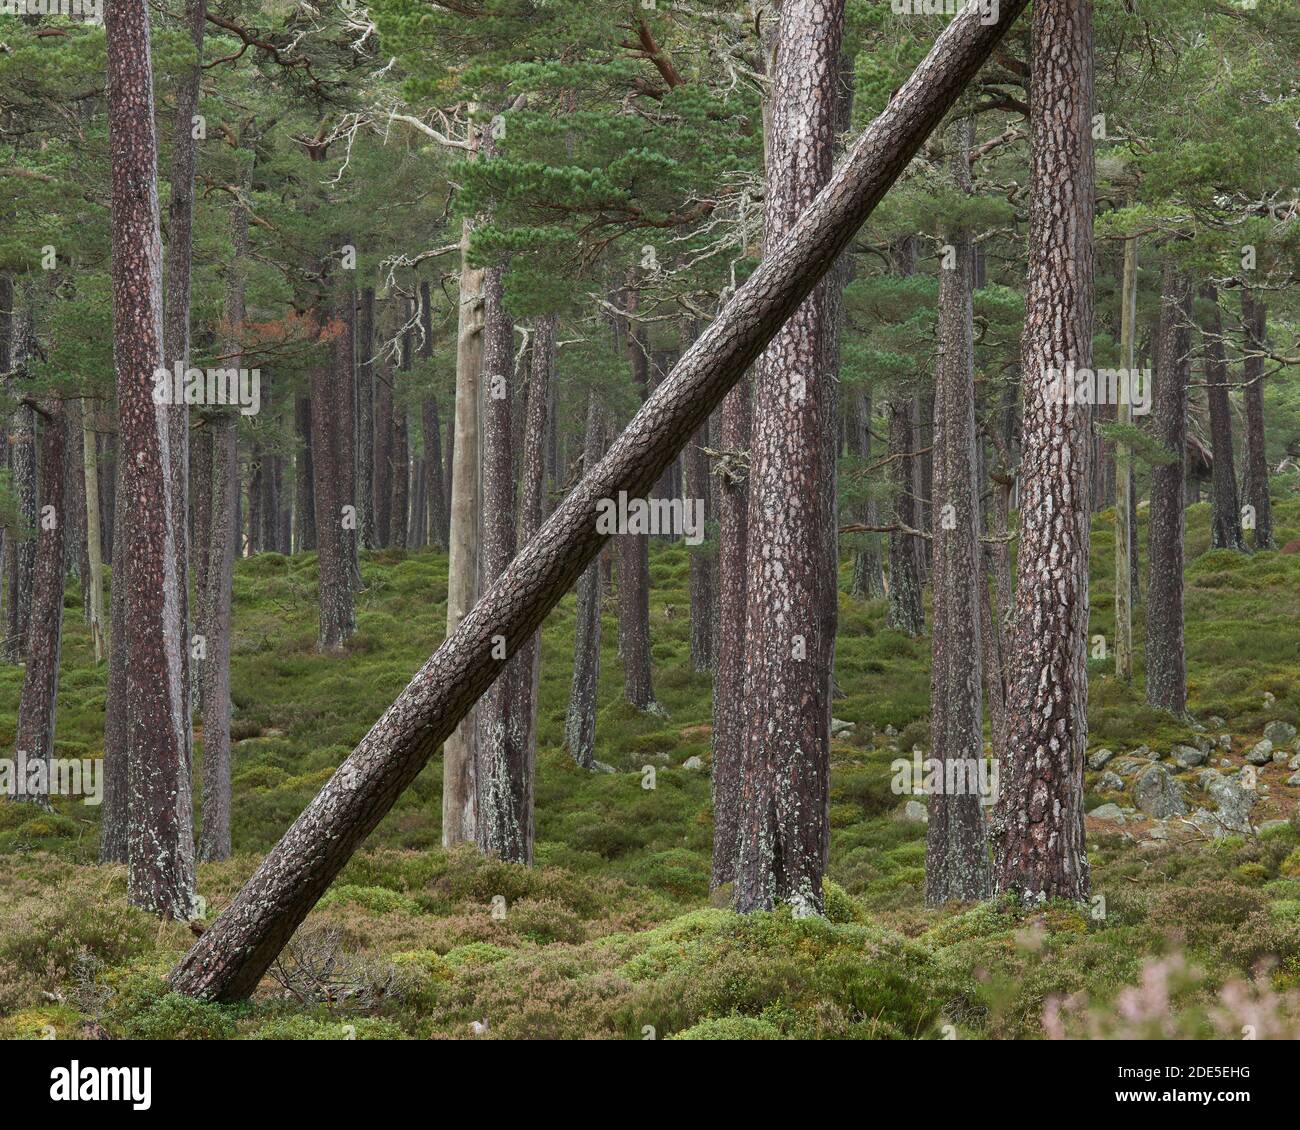 A lean Scots Pine tree trunk, Ballochbuie Forest, near Braemar, Deeside, Aberdeenshire, Scotland.  Cairngorms National Park. Stock Photo